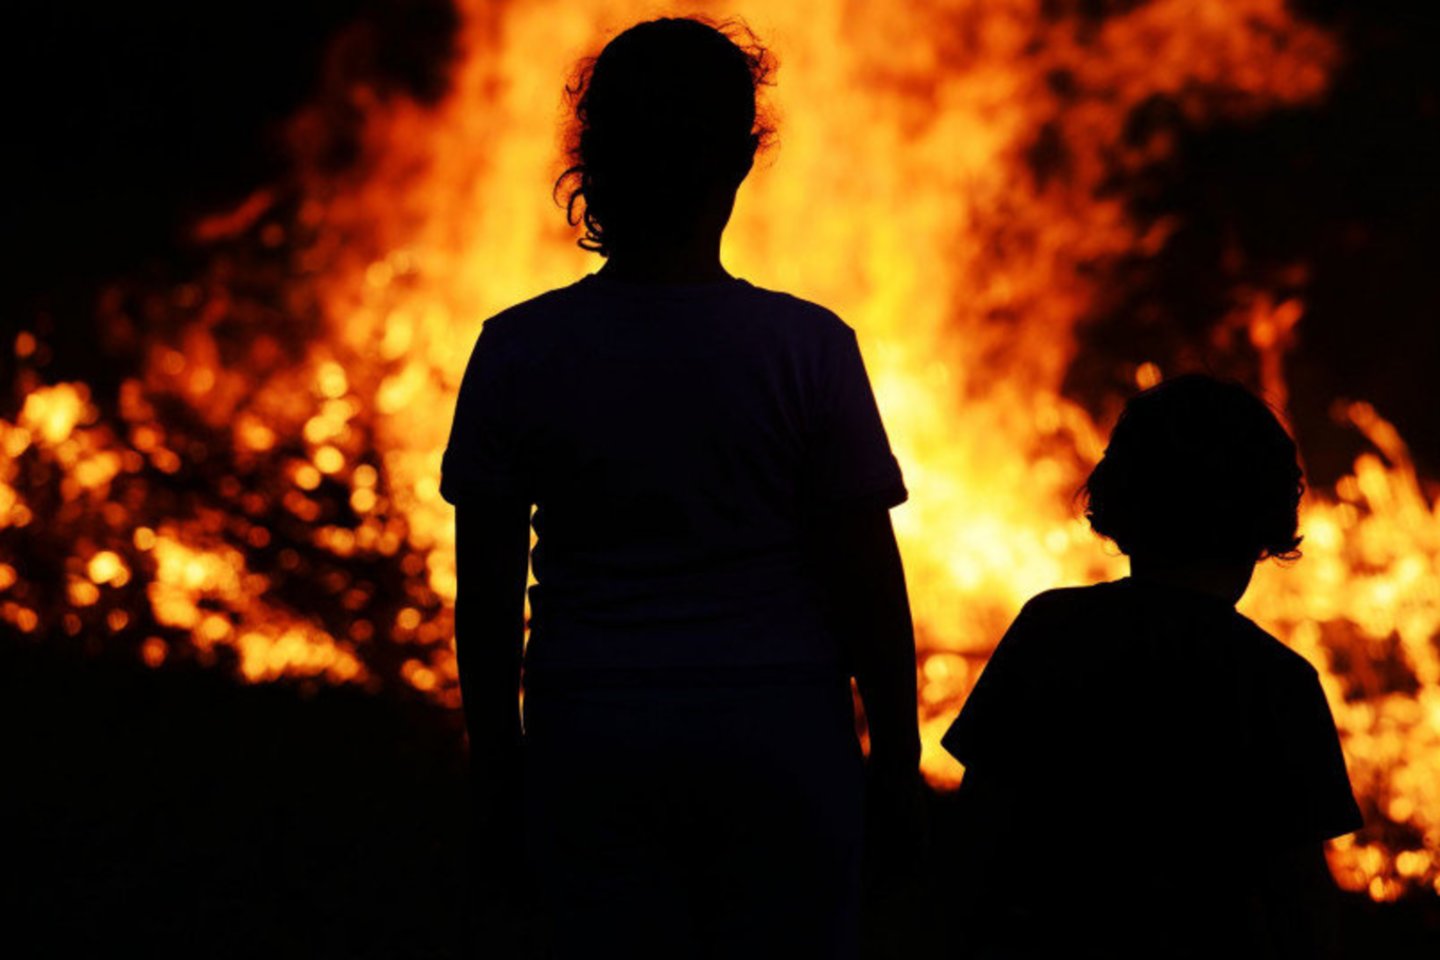  Šiemet Lietuvoje gaisrai nusinešė vieno vaiko gyvybę, dar septyni mažamečiai patyrė traumas.<br> PAGD nuotr.